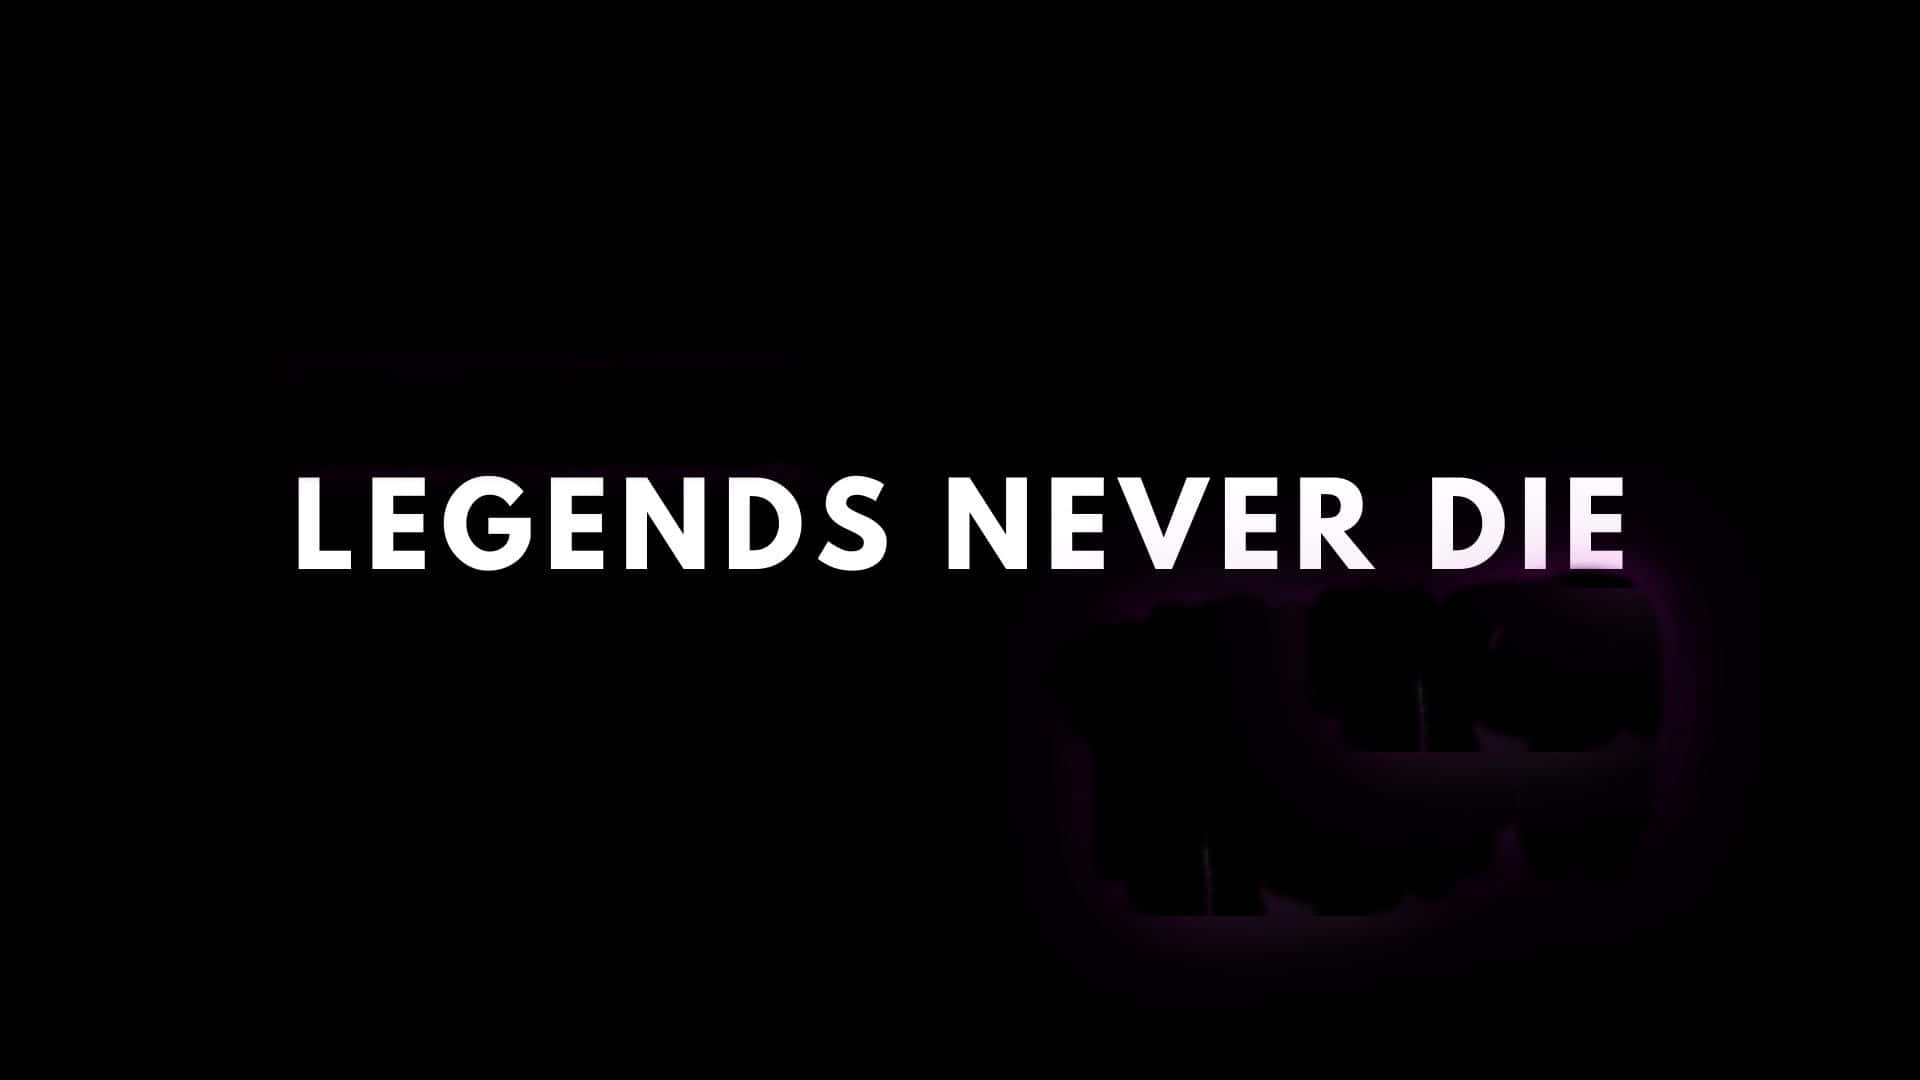 Legends Never Die Black Background Wallpaper